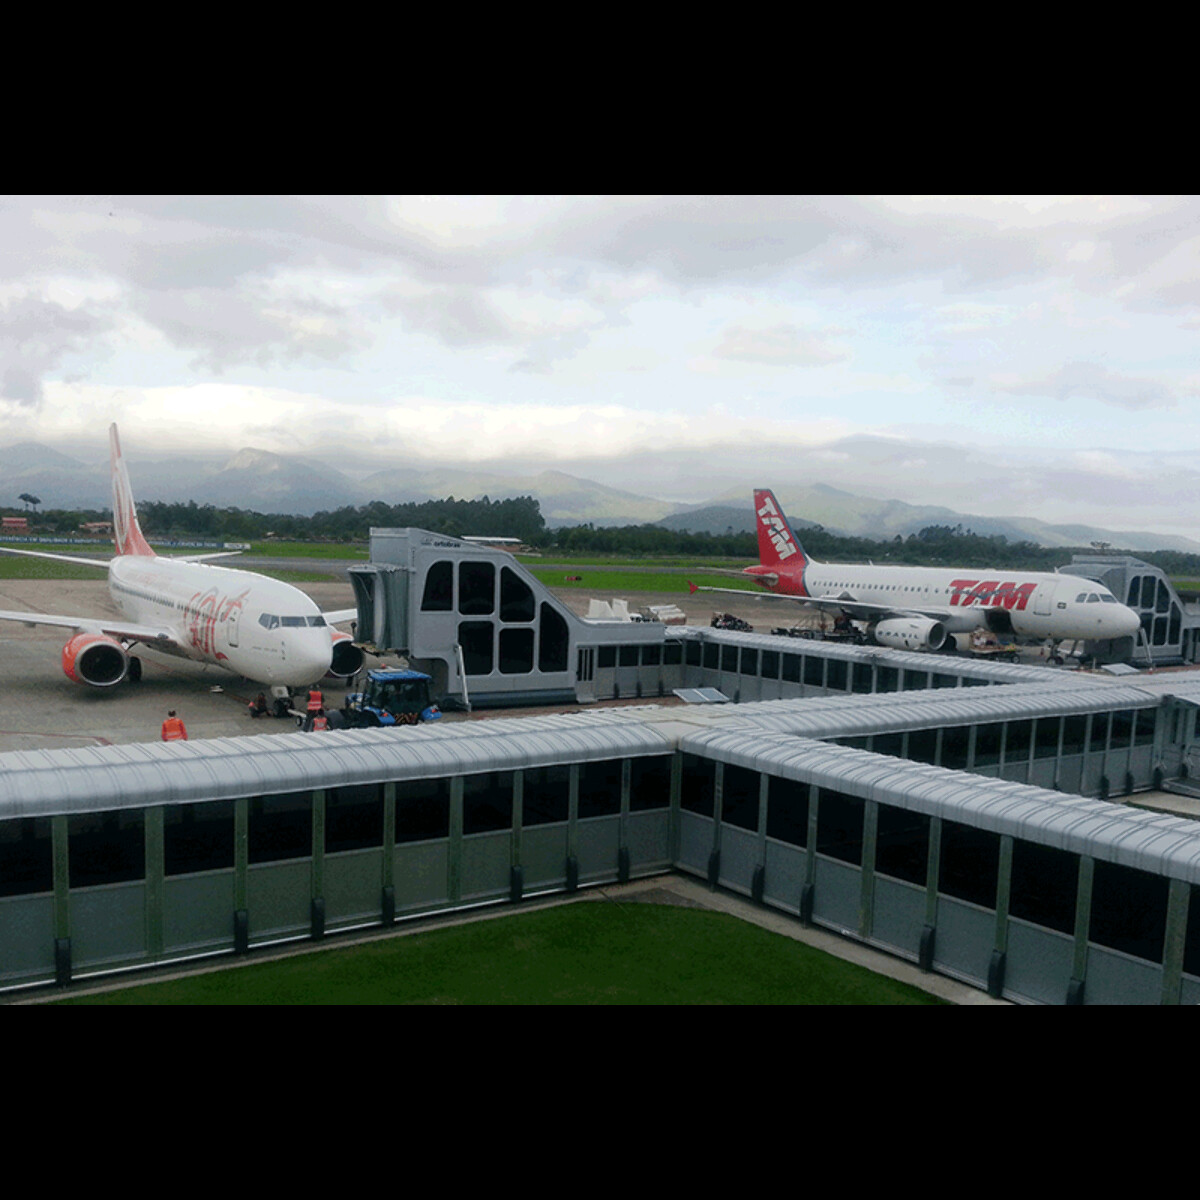 Sistema ELO entra em operação no Aeroporto de Palmas/TO - Flap International